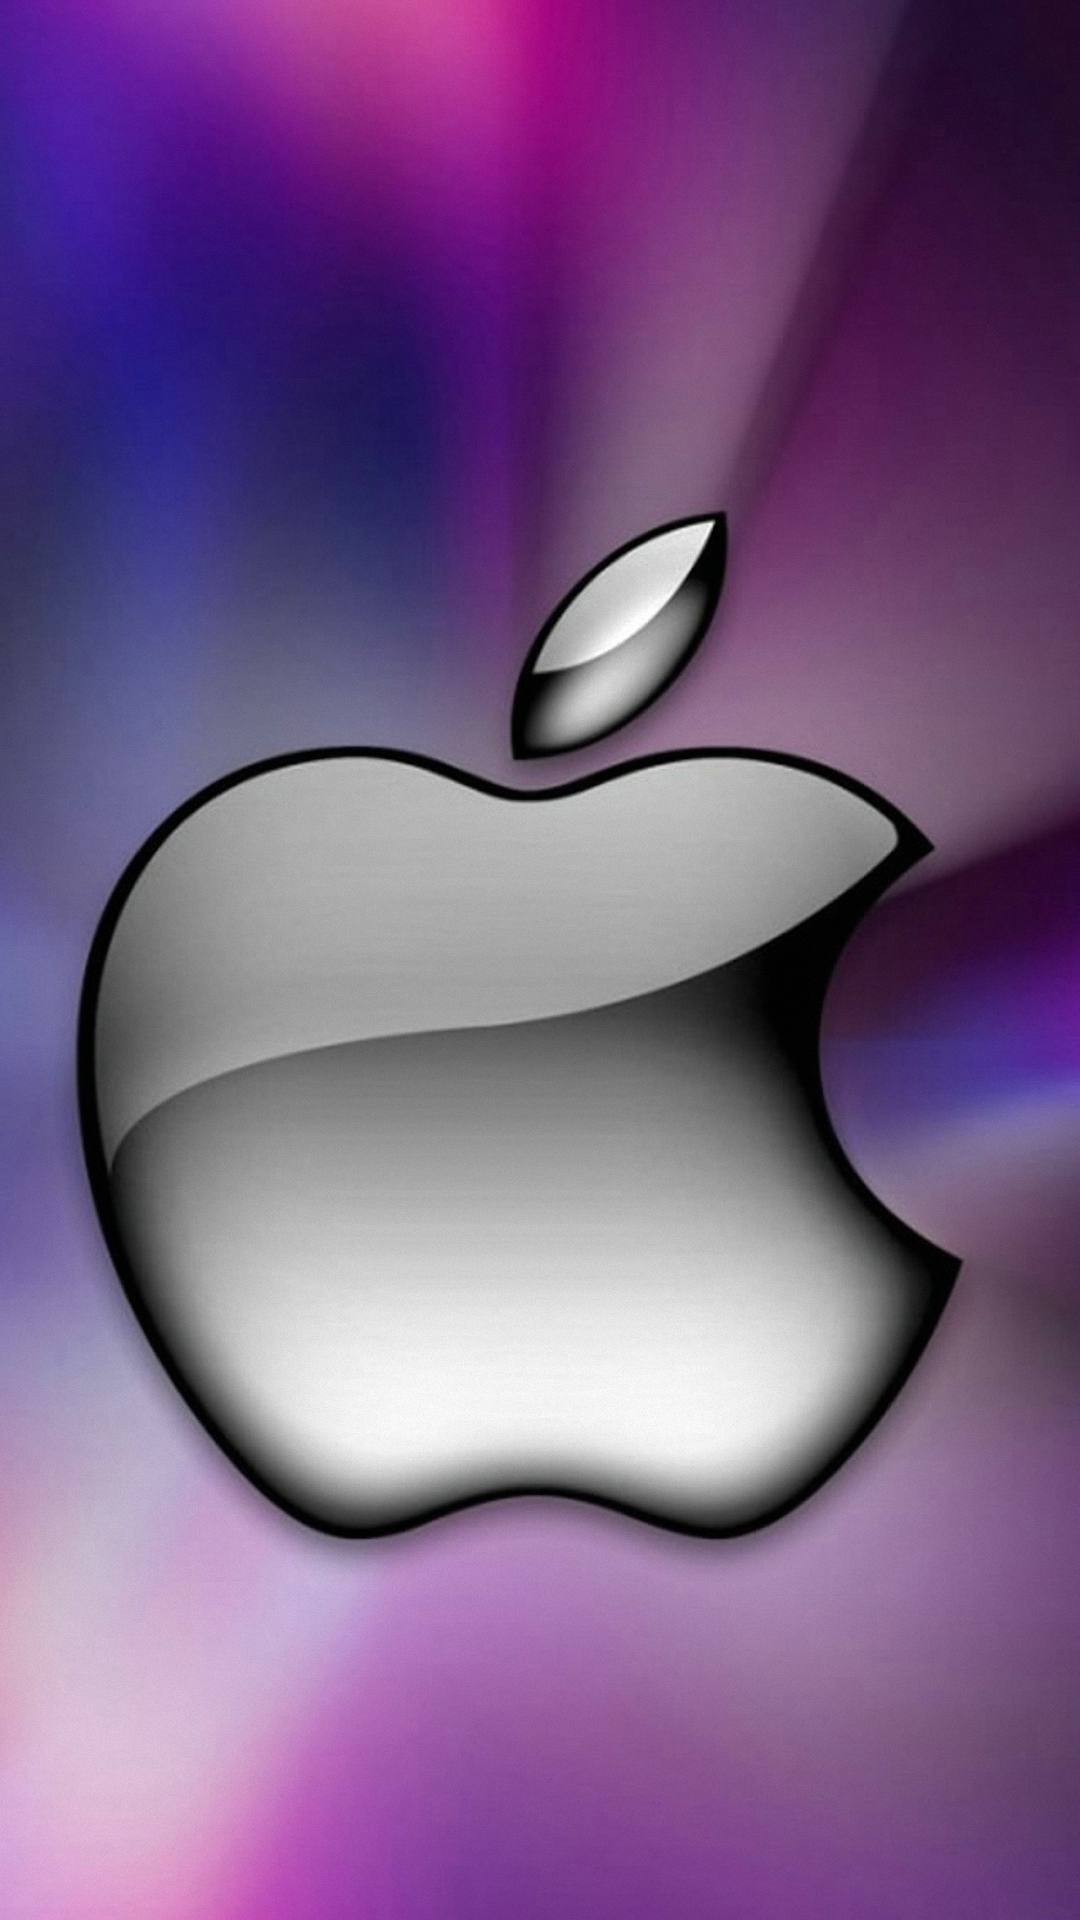 Download Gambar Iphone 6 Wallpaper Hd Apple Logo terbaru 2020